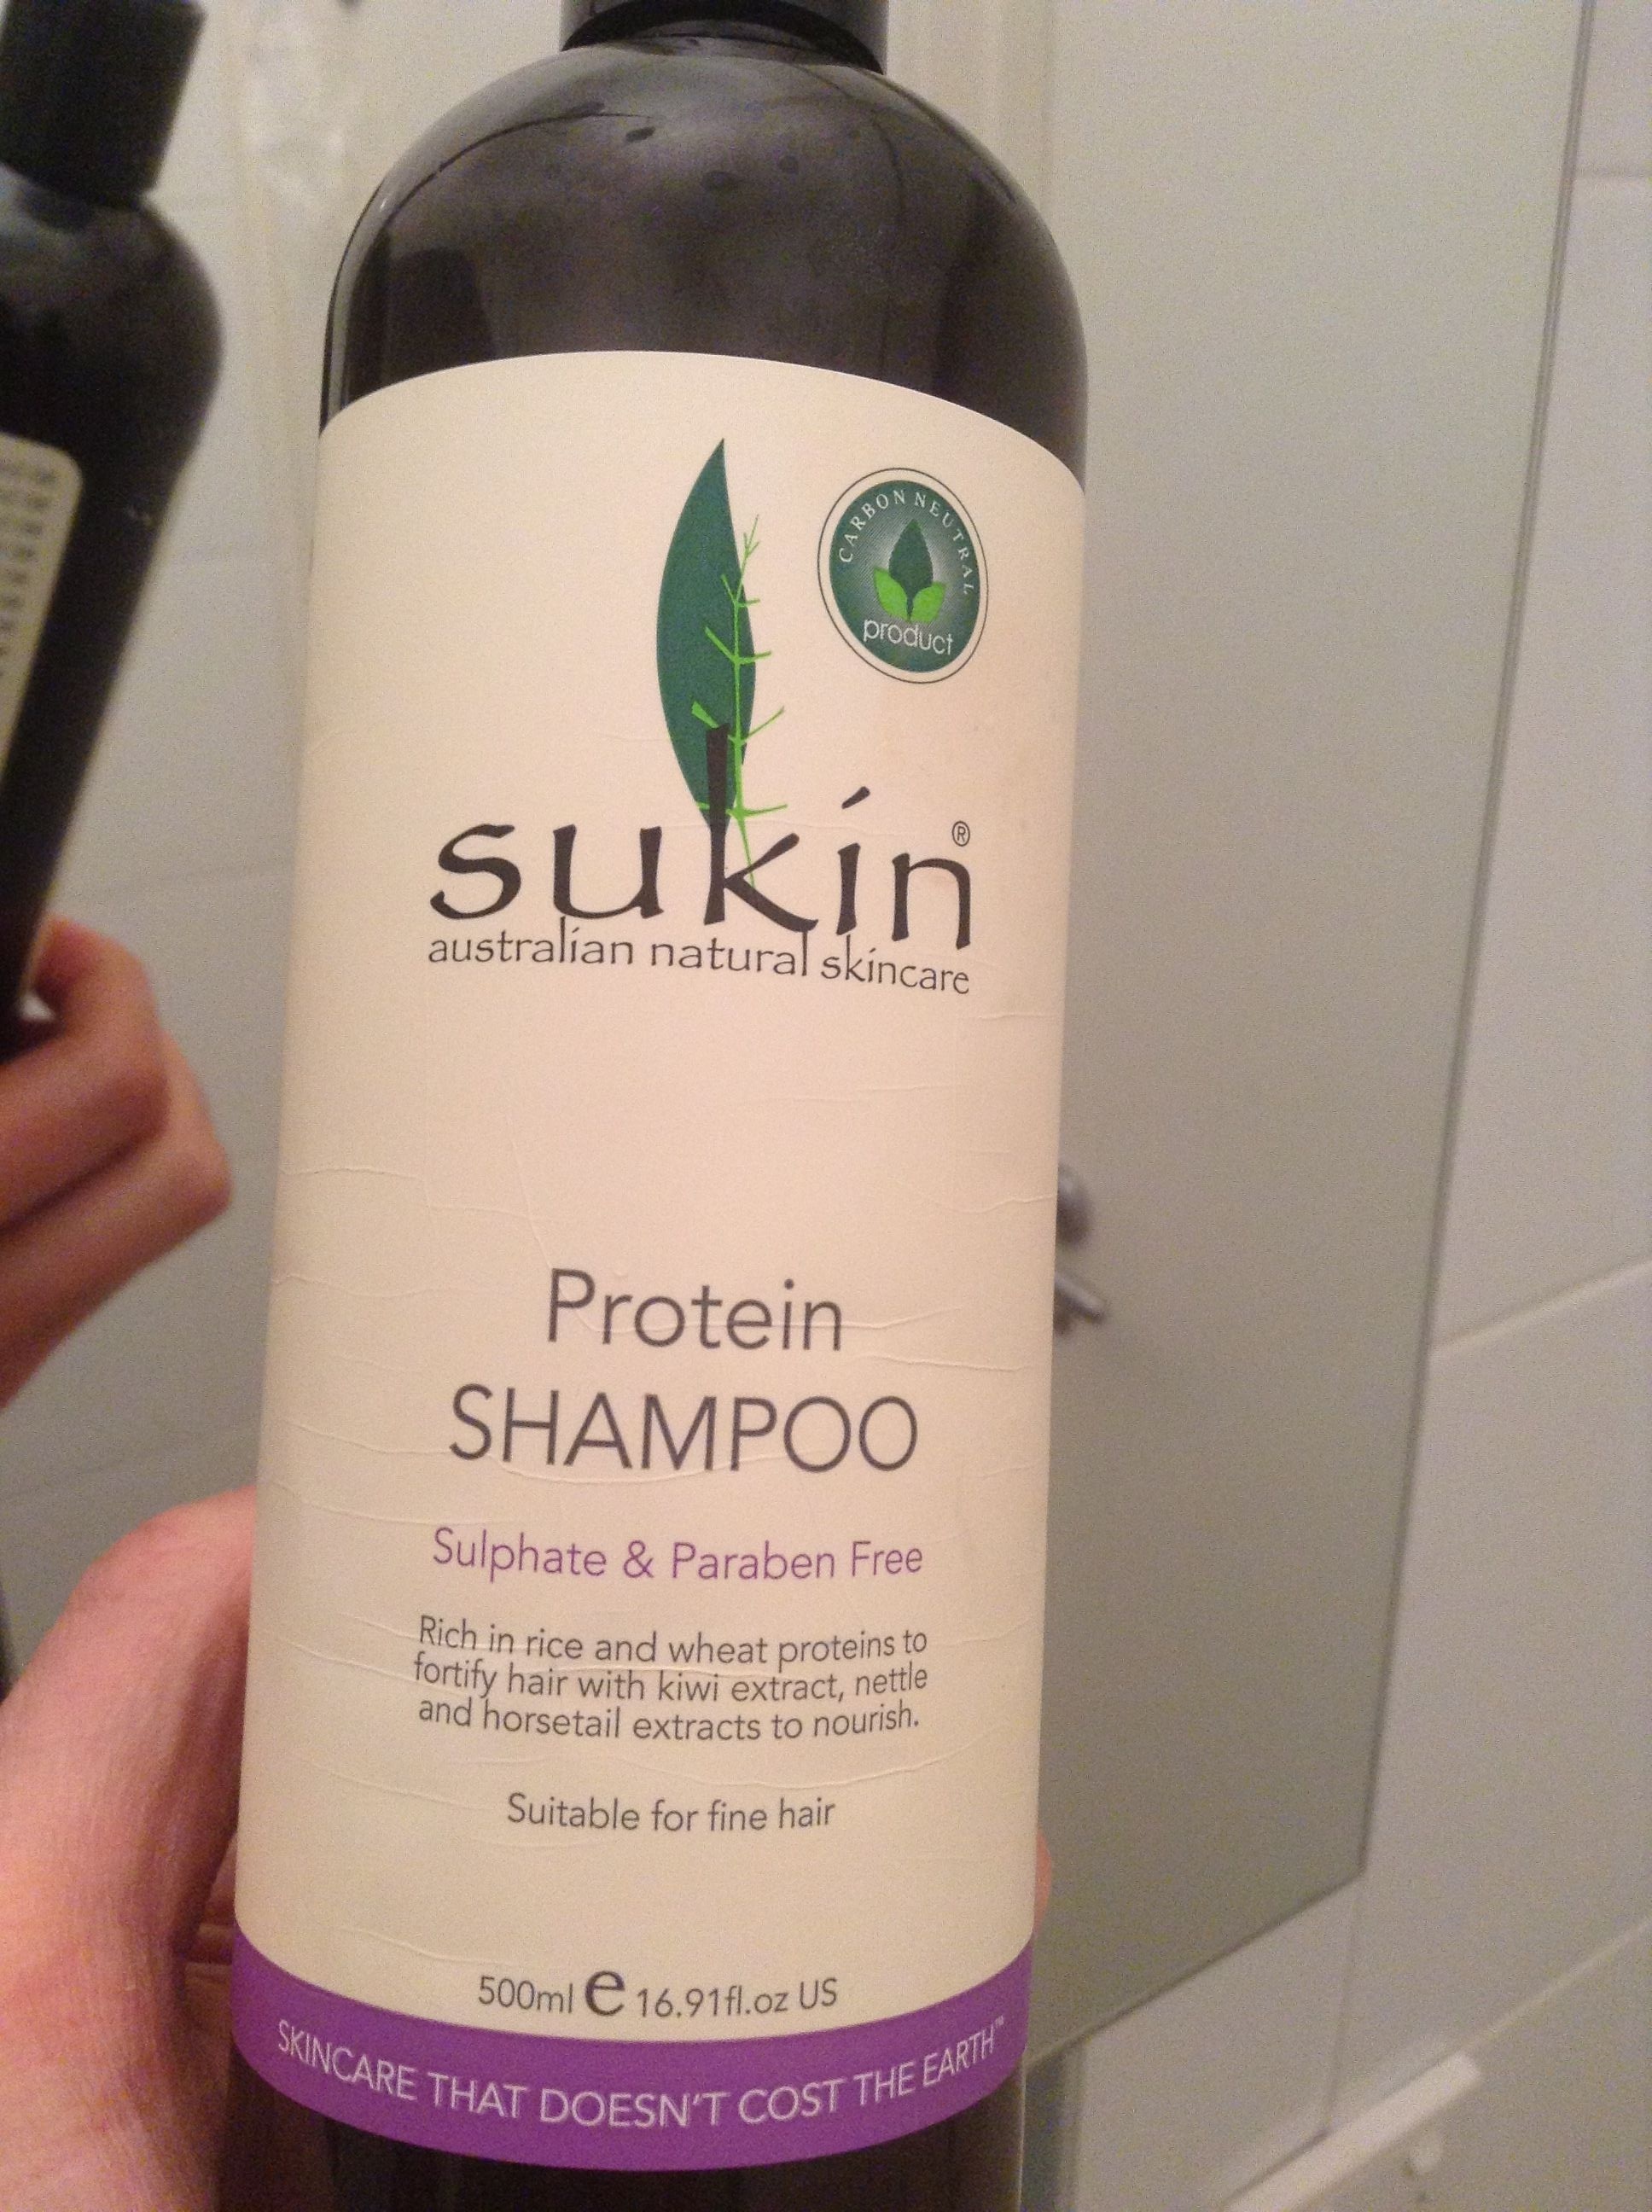 Protein Shampoo Sulfate & Paraben Free - Produkt - en